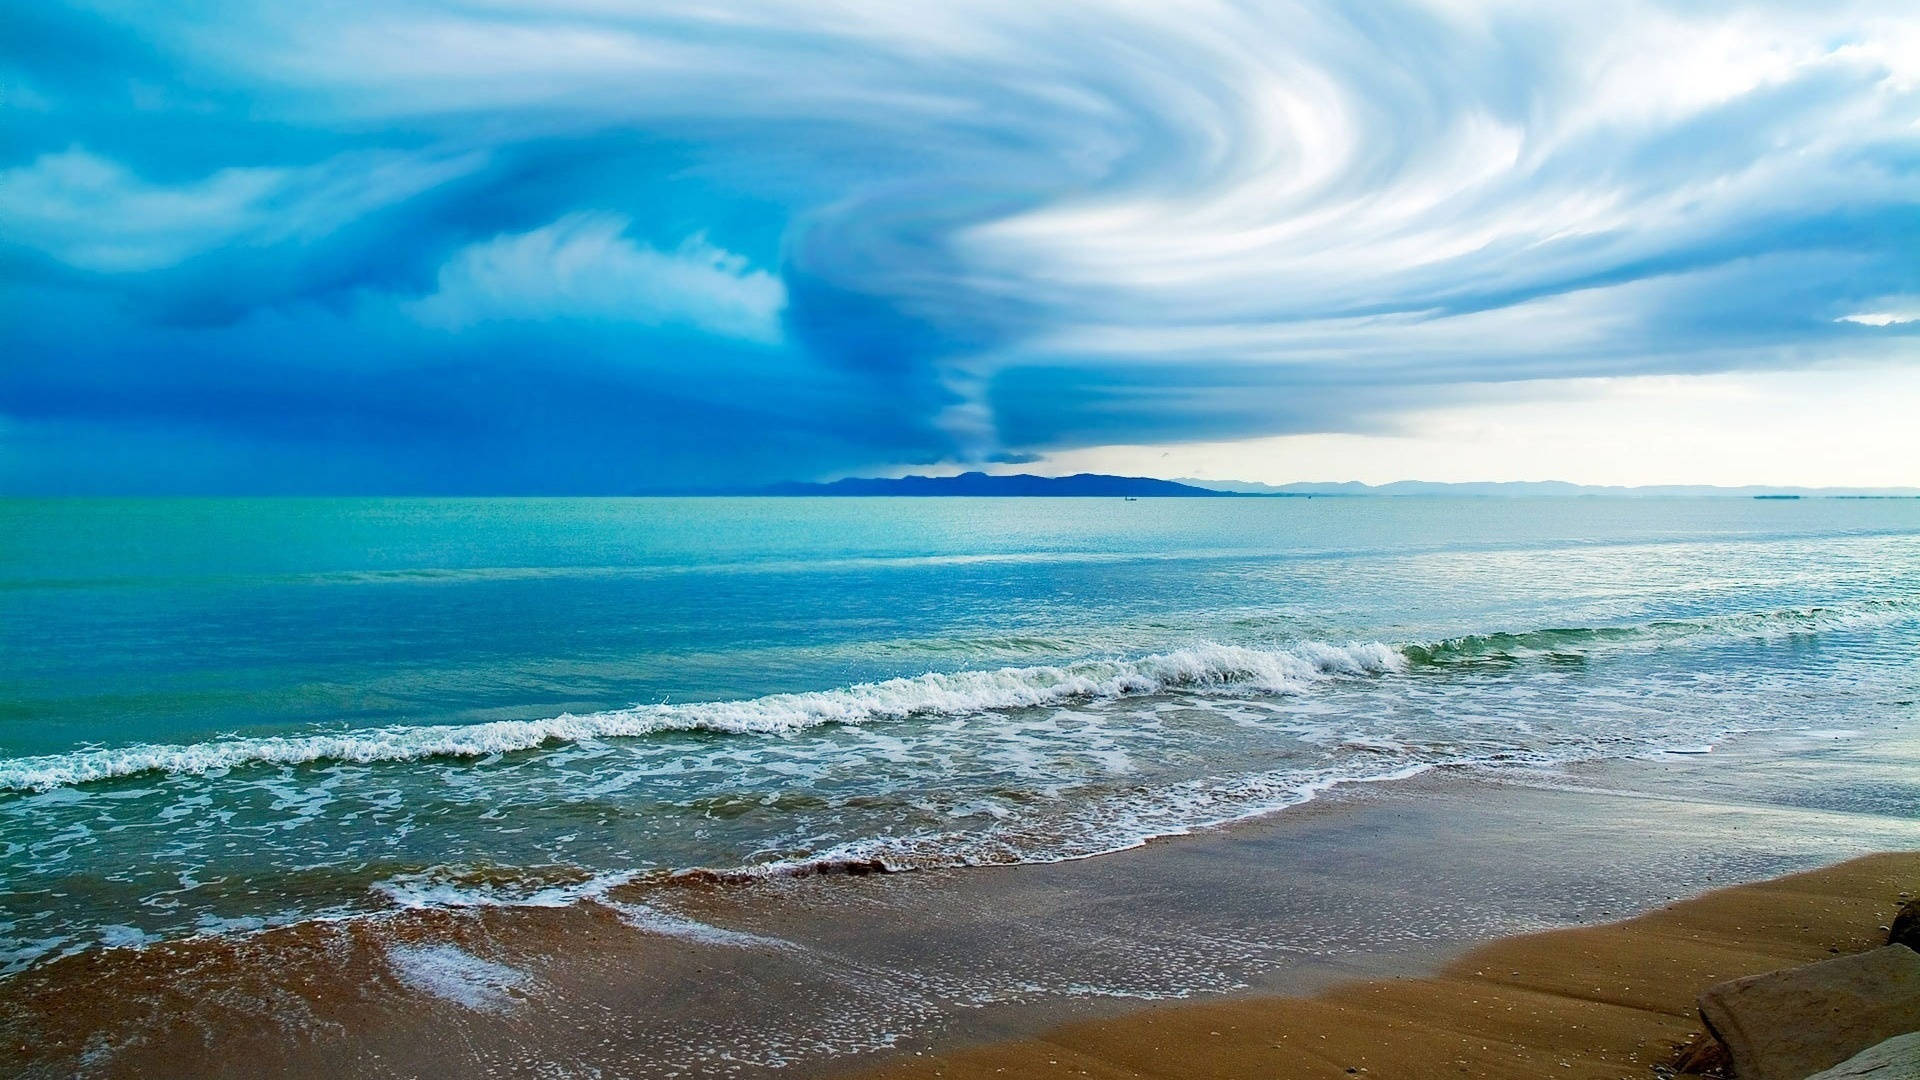 Bildskärmenbakgrundsbild: Bild På Tomma Tornado I Havet. Wallpaper